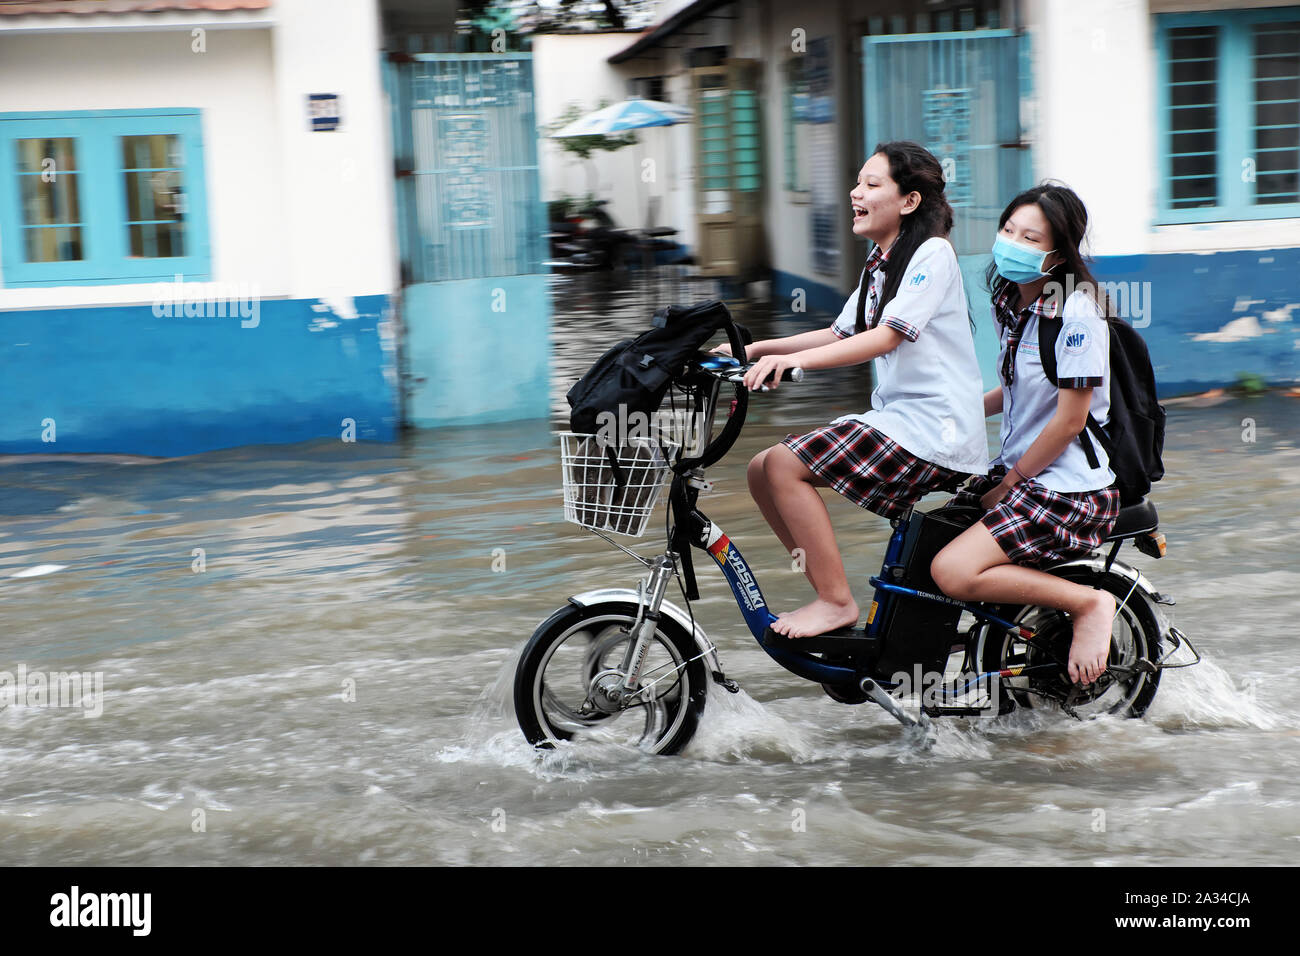 HO CHI MINH CITY, VIETNAM - Sept 30, 2019: 2 Schule Mädchen fahrt Elektrofahrrad Kreuzung überschwemmte Straße bei Flut am Abend, jugendlich Mädchen lachen, wenn Mo Stockfoto